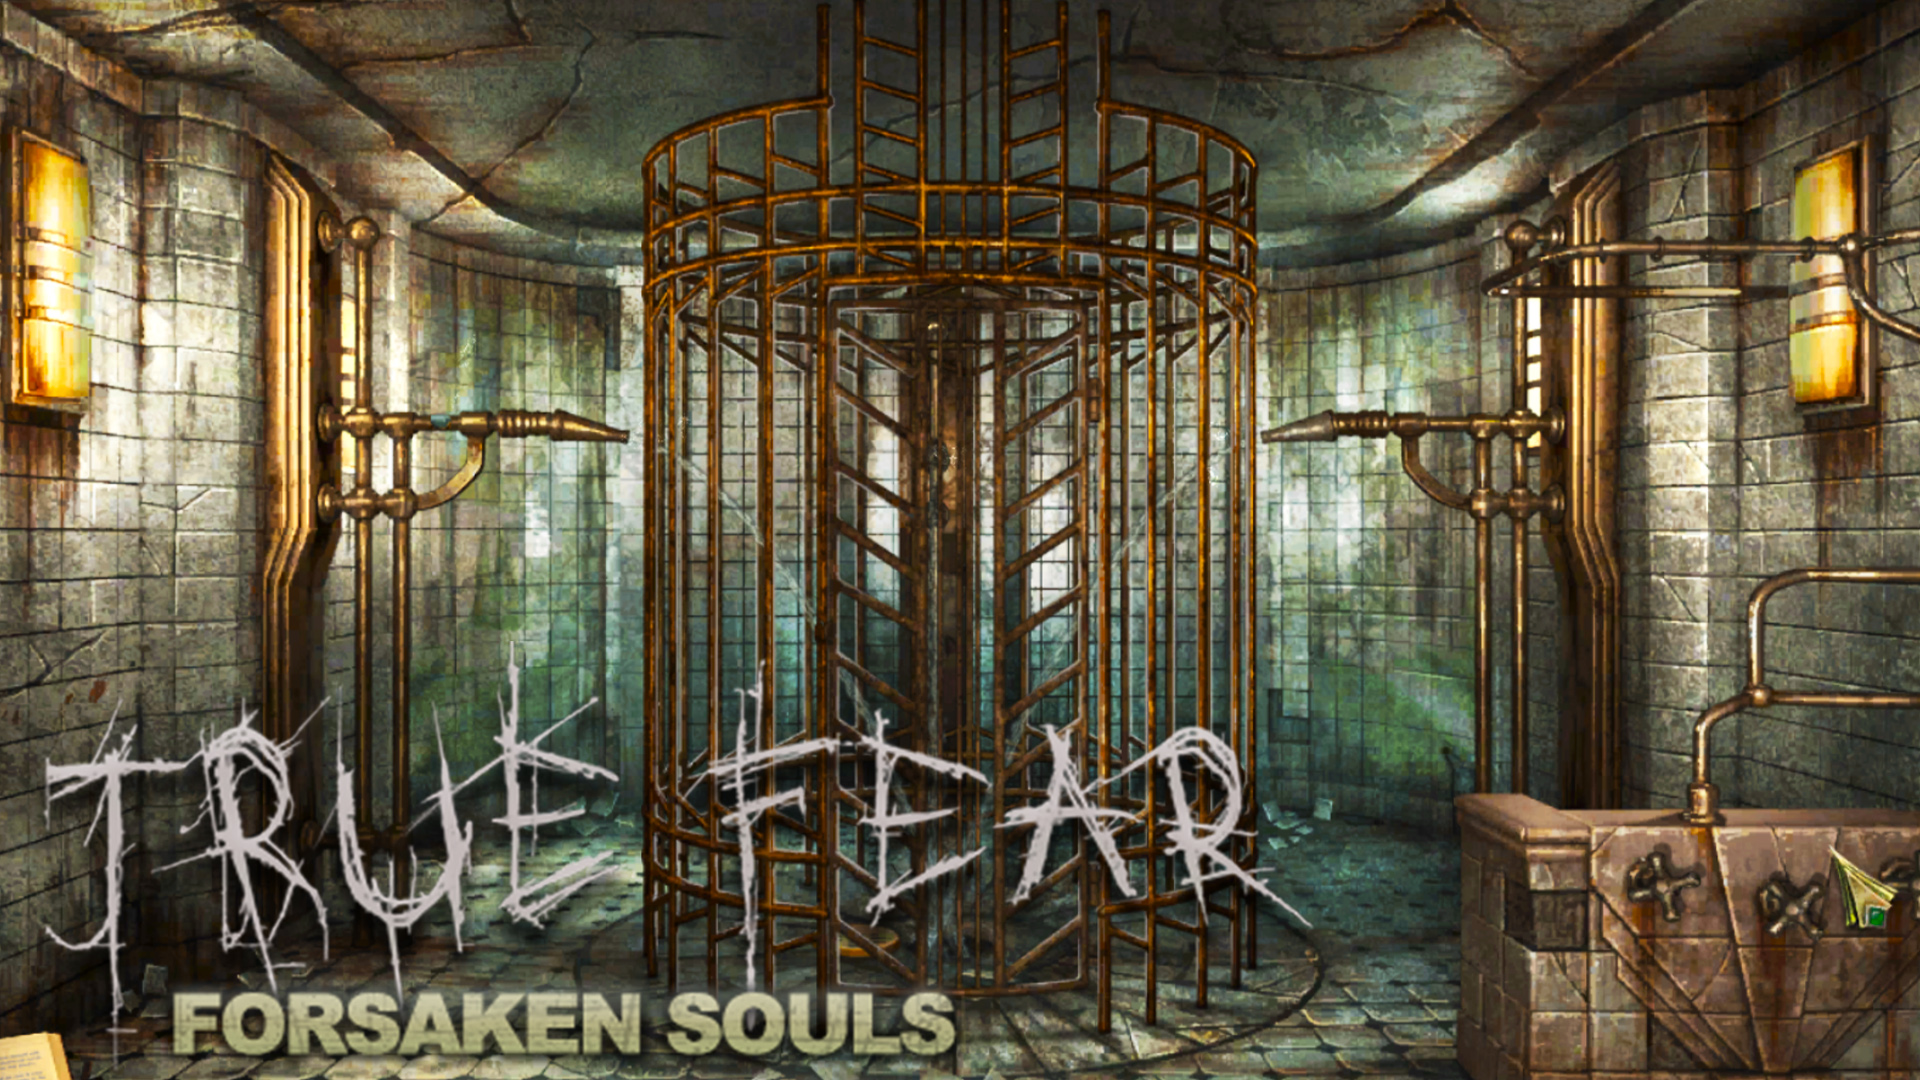 Forsaken souls 3. Игра true Fear. True Fear Forsaken Souls 2. Тру Фир Форсакен соулс.